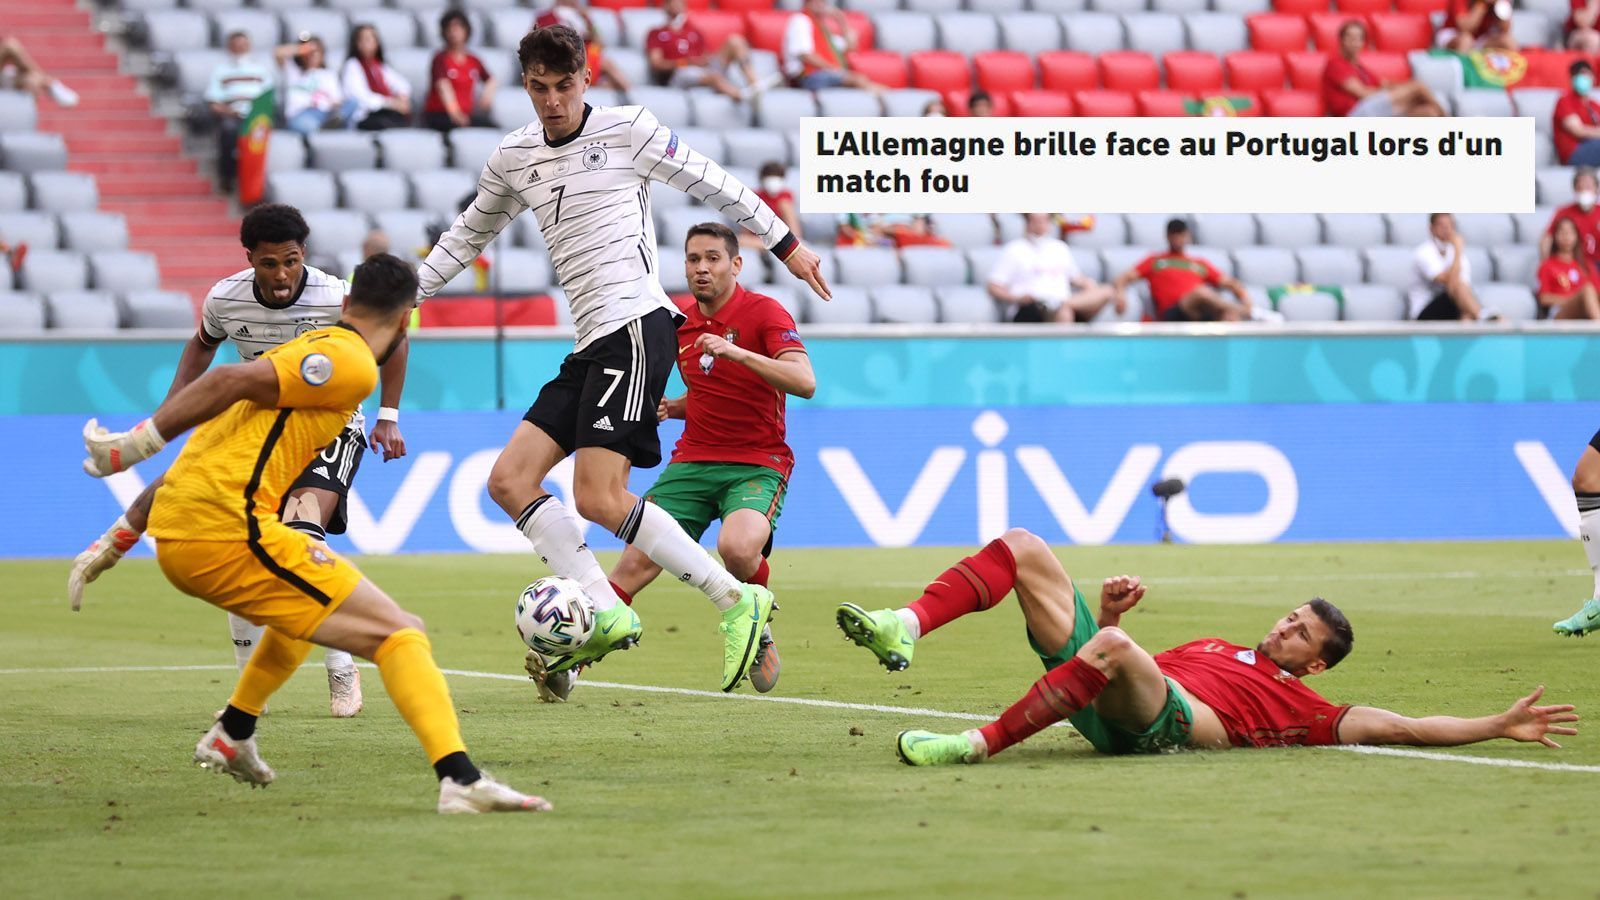 
                <strong>L'Equipe (Frankreich)</strong><br>
                "Deutschland brilliert gegen Portugal in einem verrückten Match. Trotz Rückstand besiegen die Deutschen Portugal in einem spektakulären Spiel. Die Spannung in der Gruppe F bleibt bestehen."
              